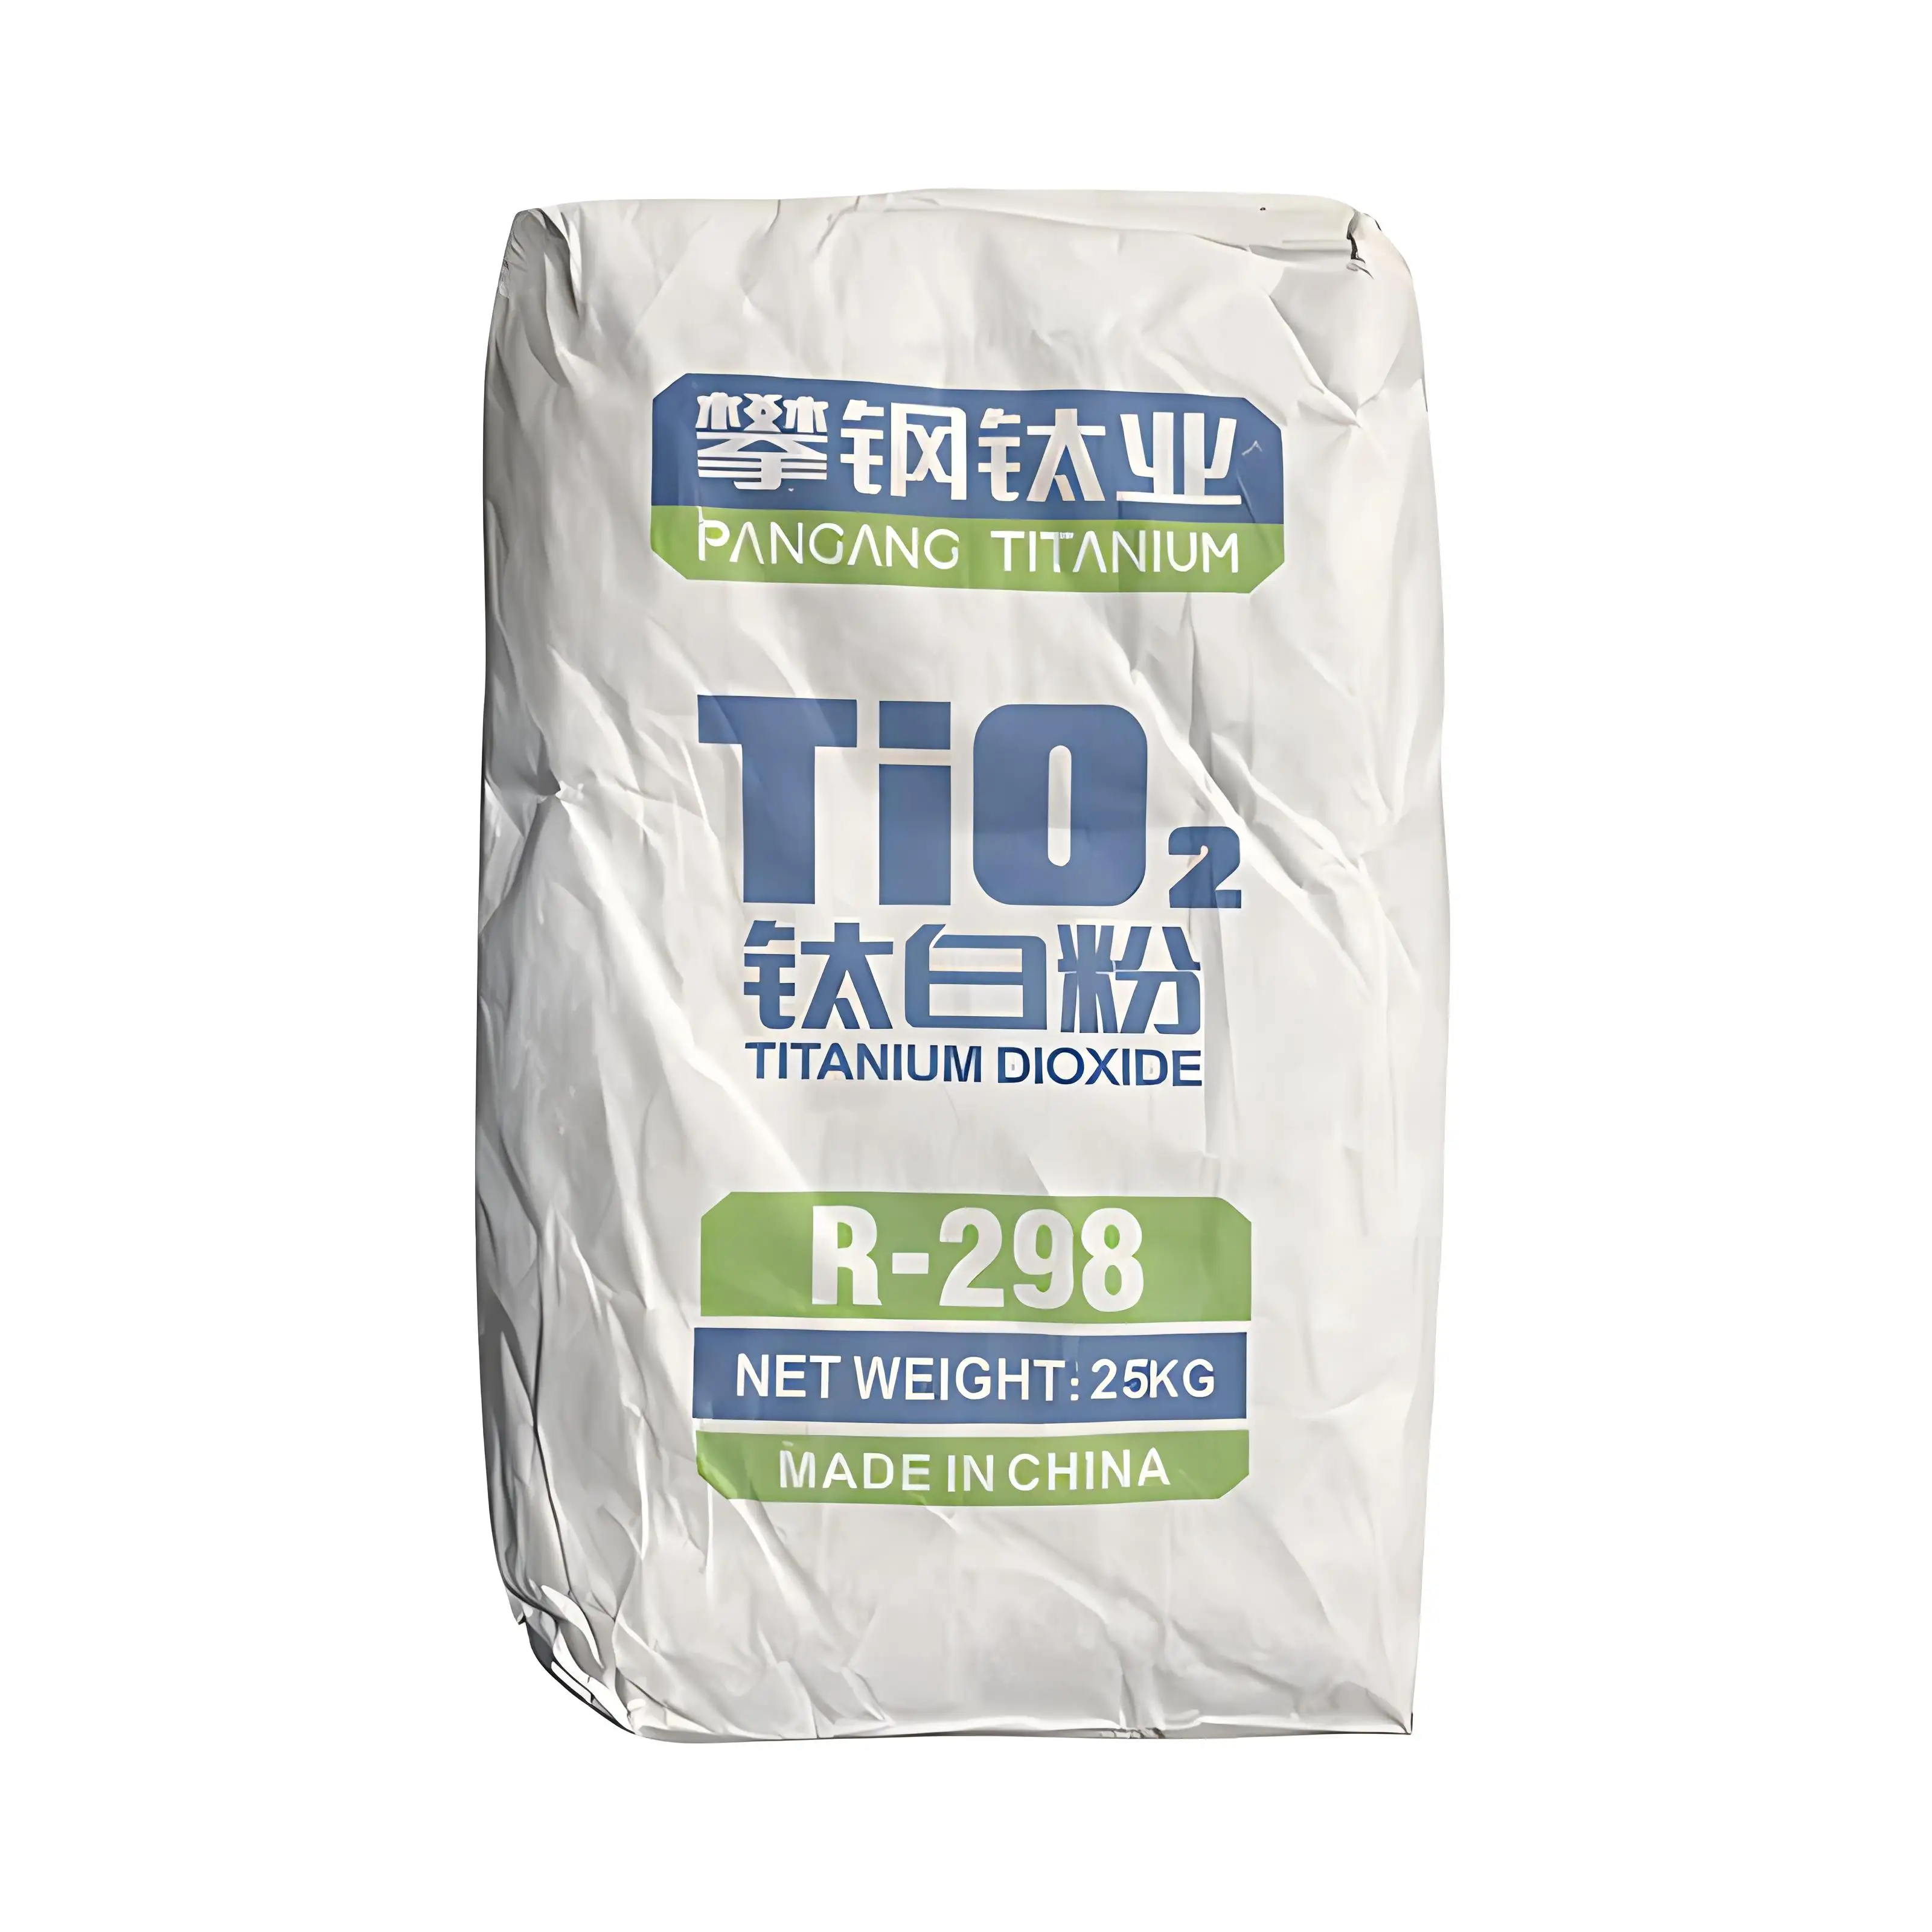 Großhandel industrielle TiO2-Pulver Titan-Dioxid Rutil-Edelmetall-Pulver für Beschichtung Lackierung